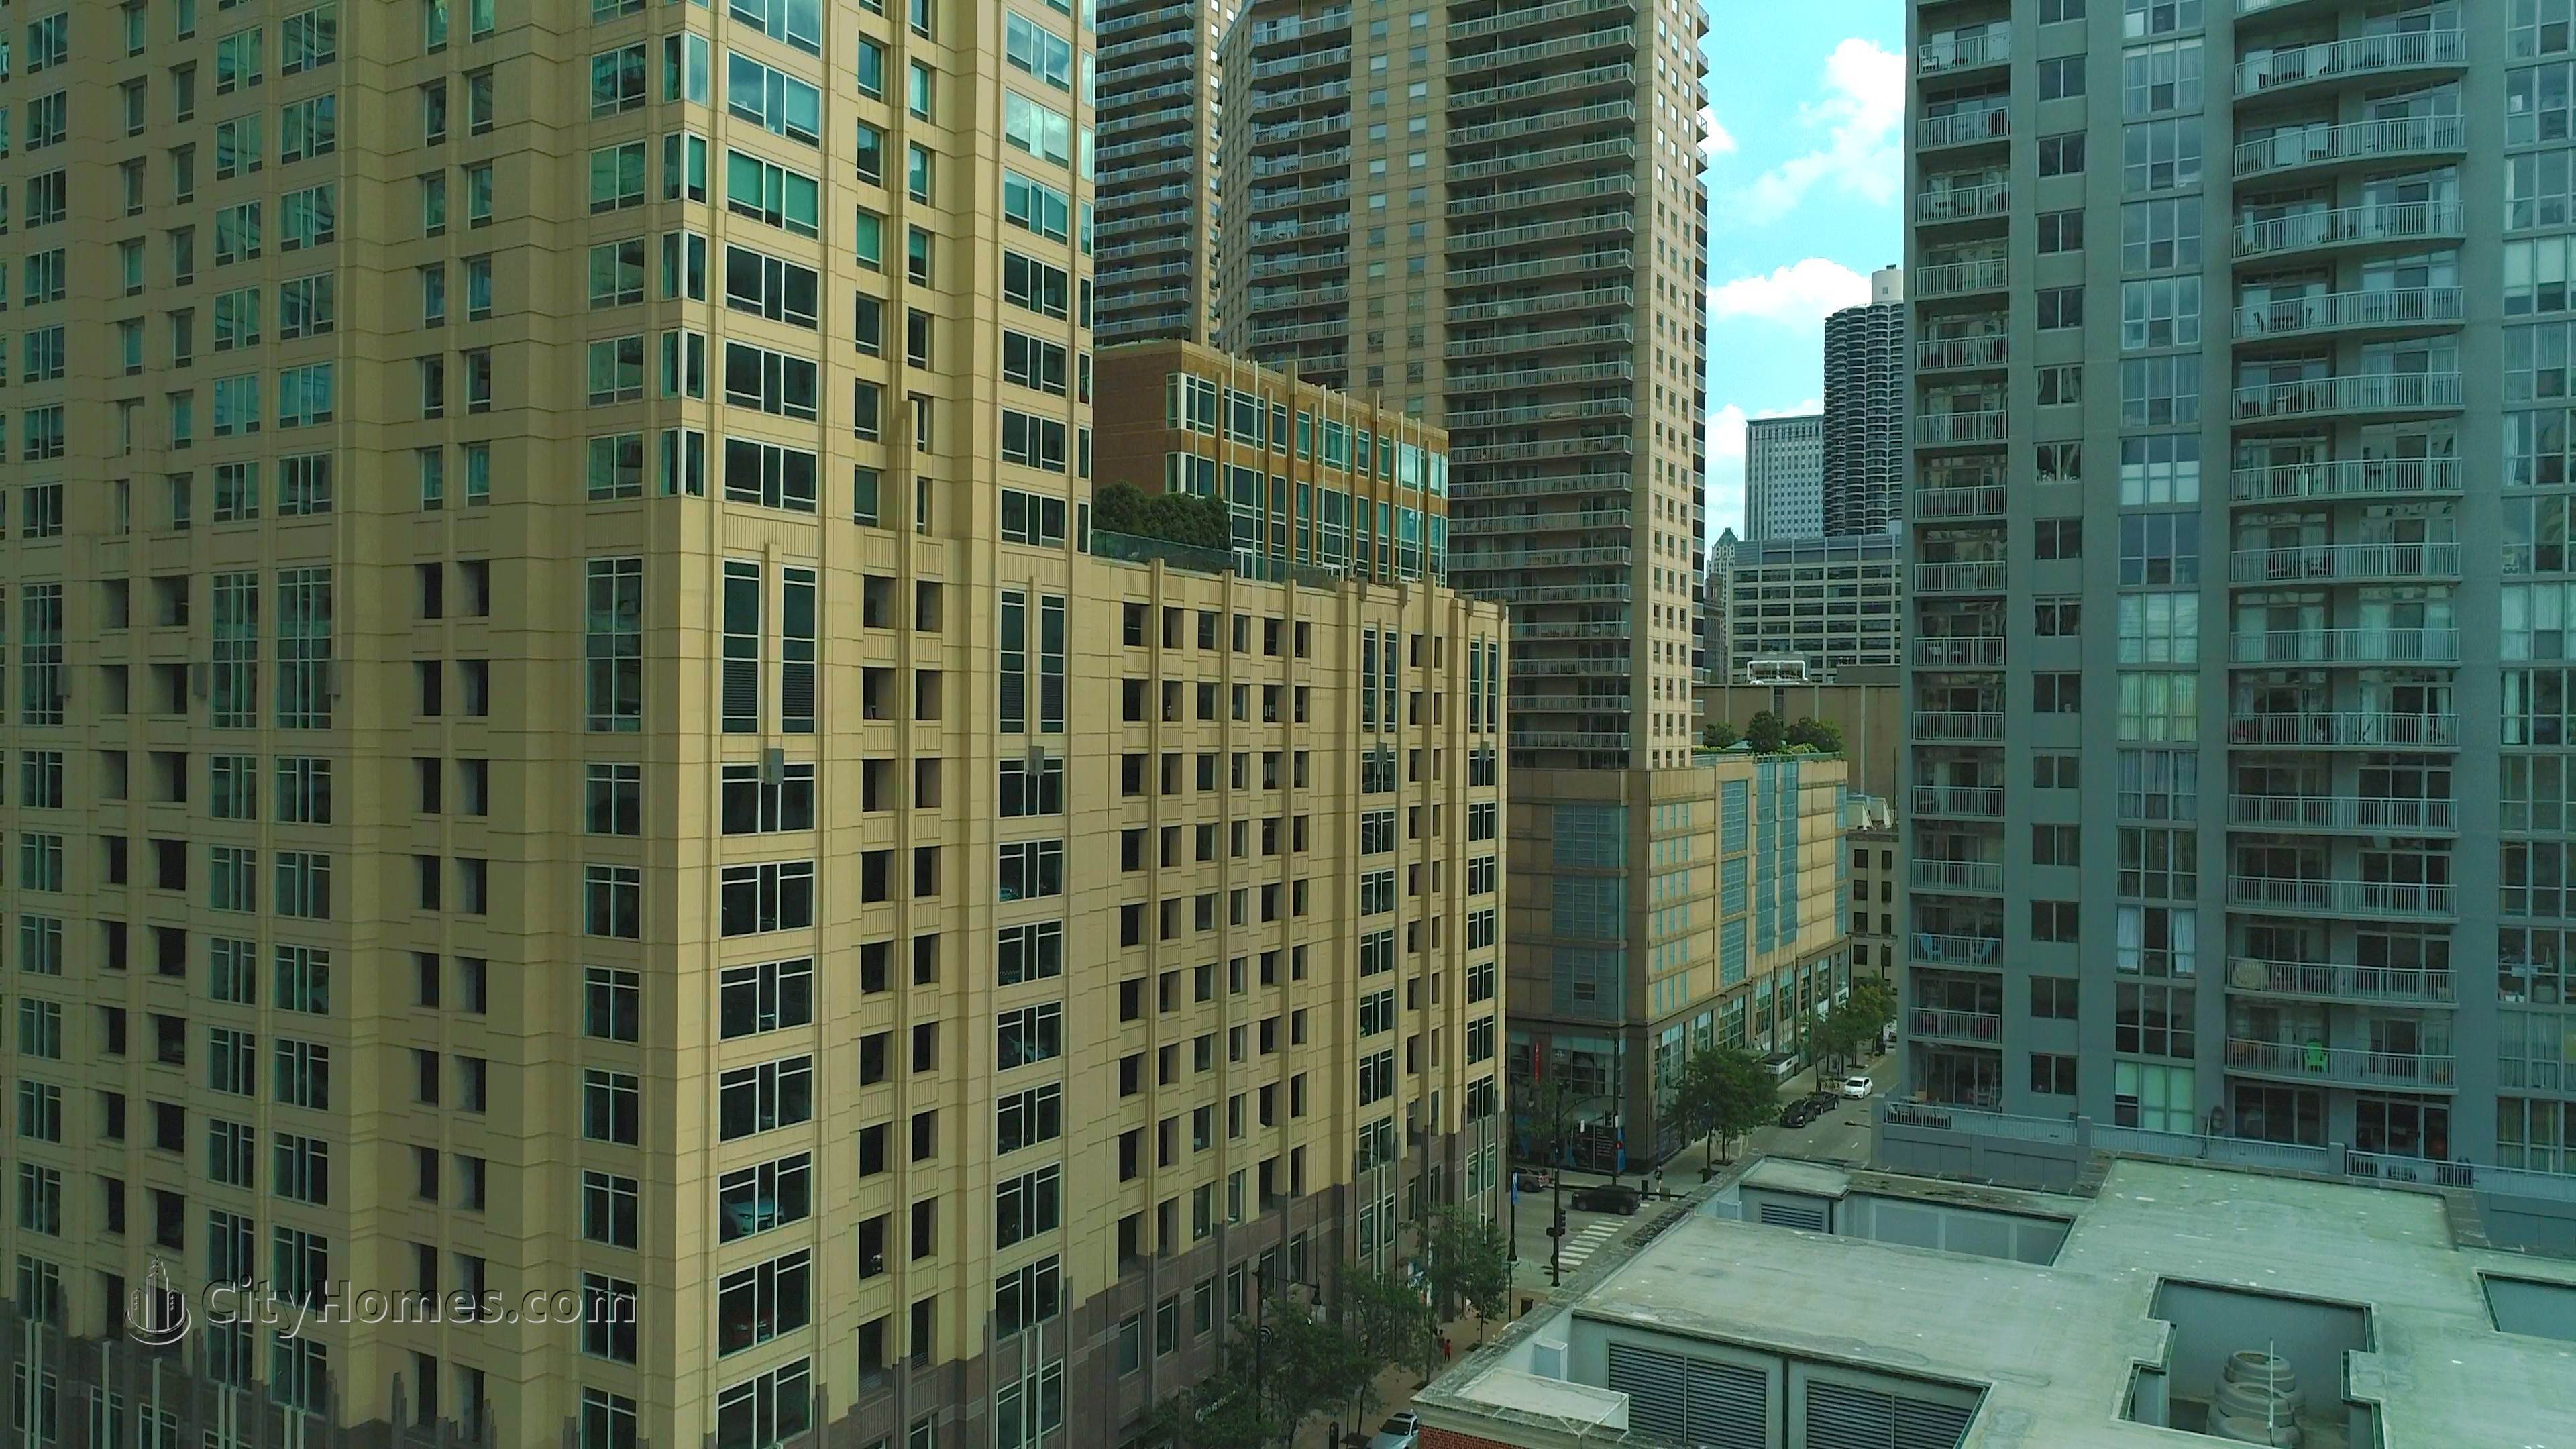 Millennium Centre gebouw op 33 W Ontario St, Central Chicago, Chicago, IL 60610